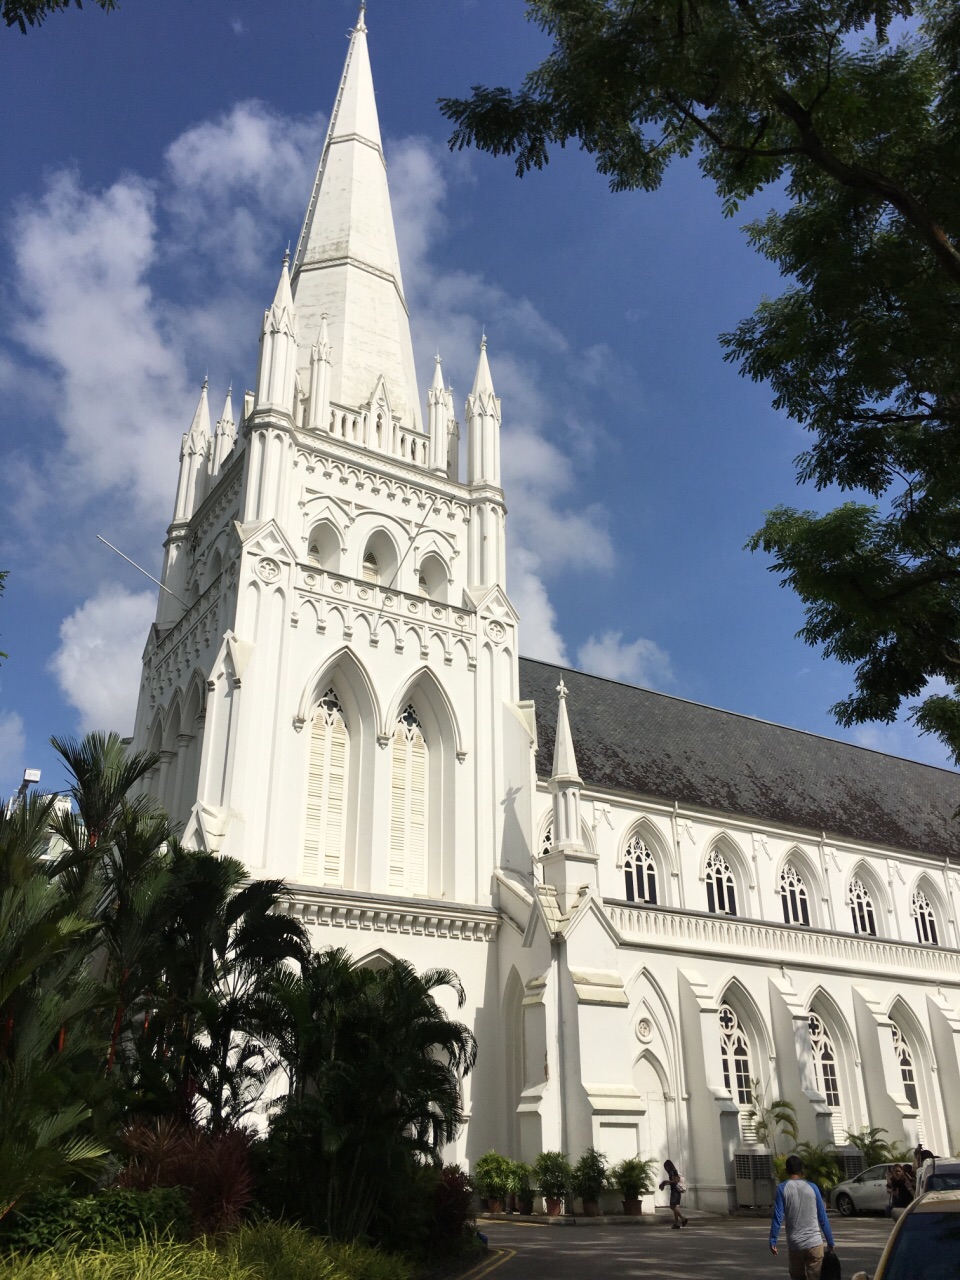 【携程攻略】新加坡圣安德烈教堂景点,一座历史悠久的天主教堂,白色的